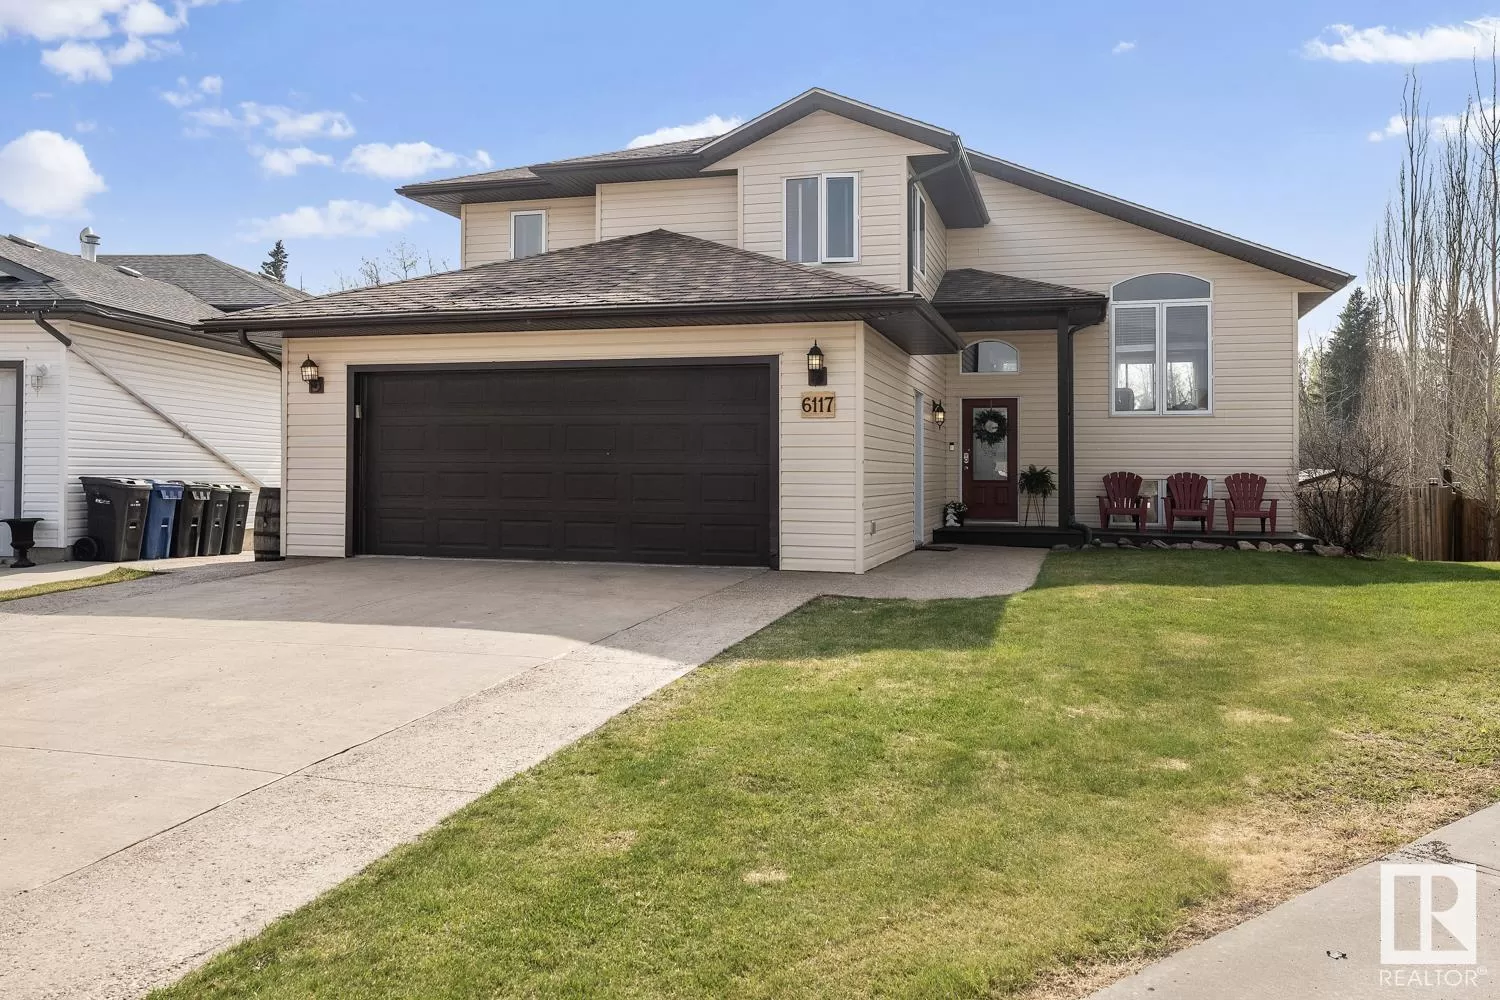 House for rent: 6117 54 Av, Cold Lake, Alberta T9M 2C8